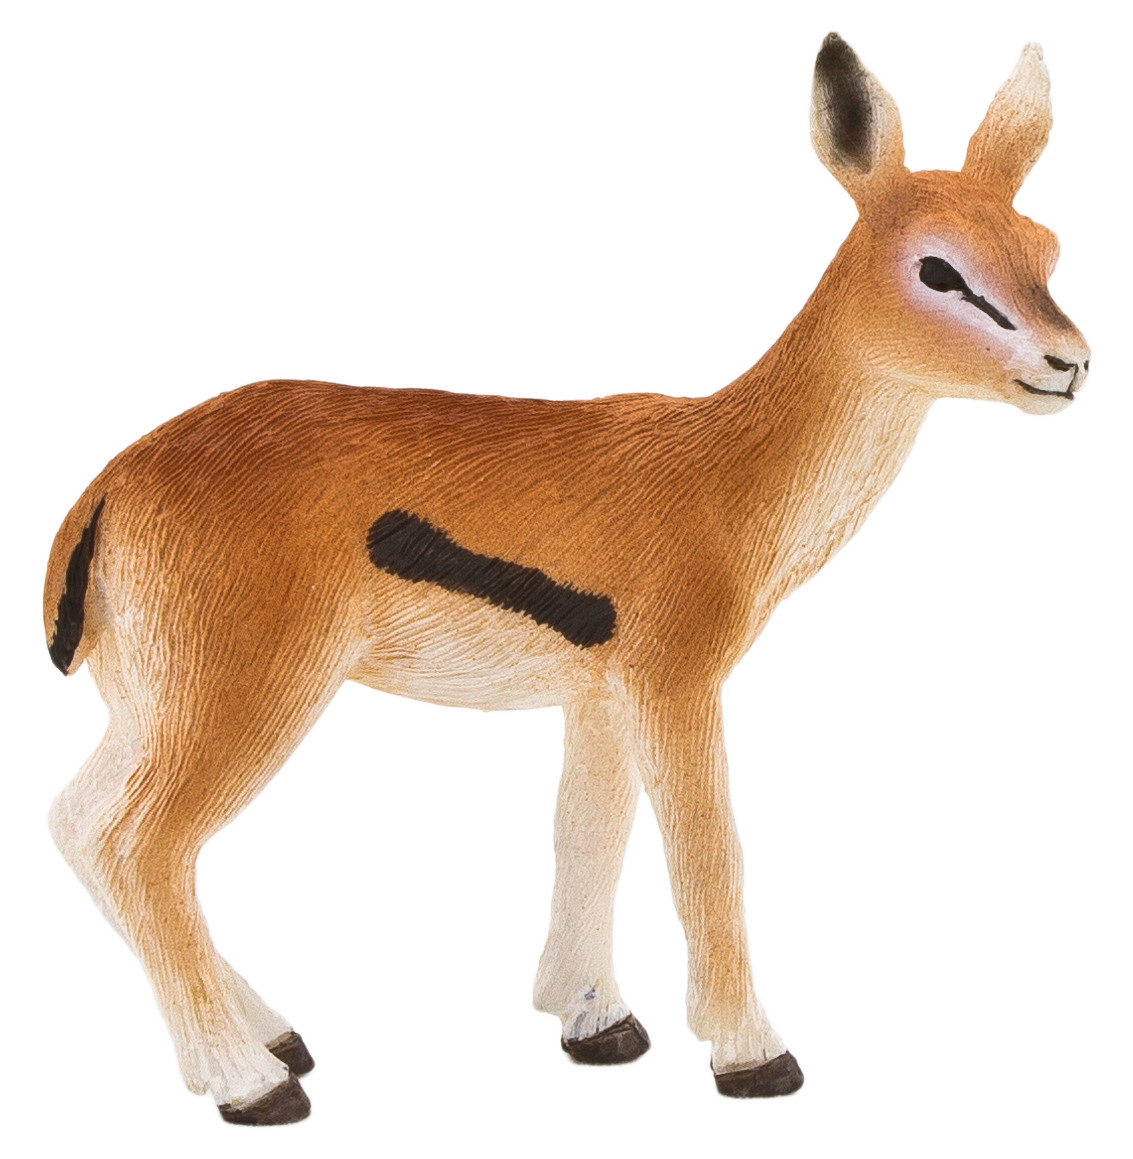 Gazelle Transparent Background PNG Image